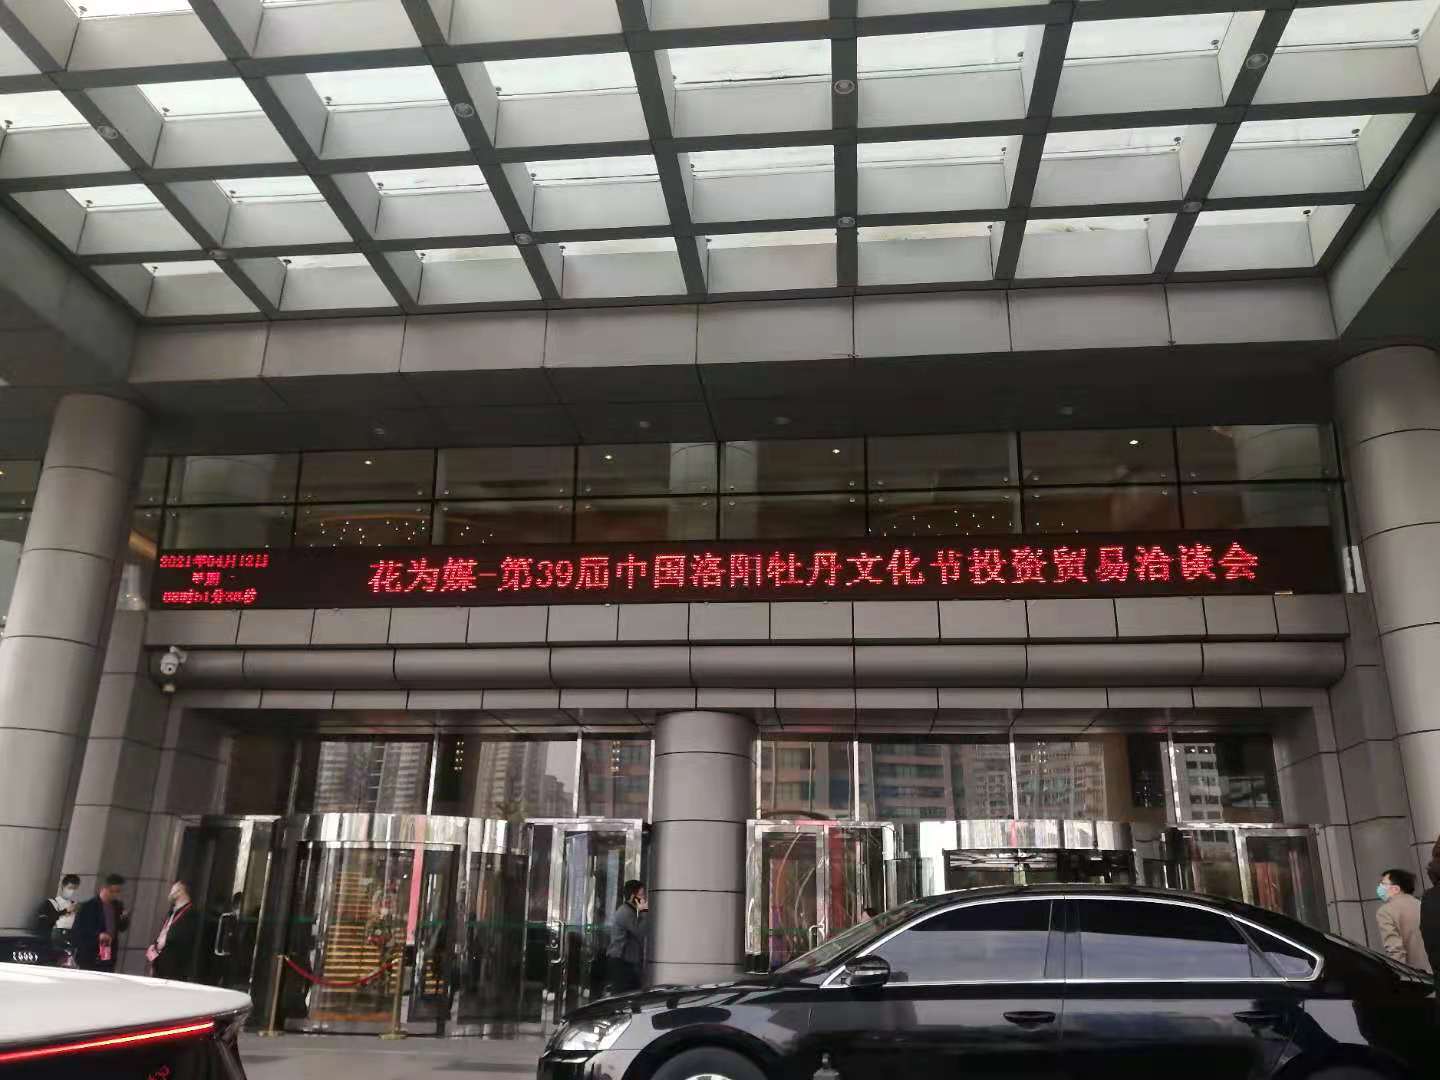 洛阳安德路科技有限公司参加第39届中国洛阳牡丹文化节投资贸易洽谈会